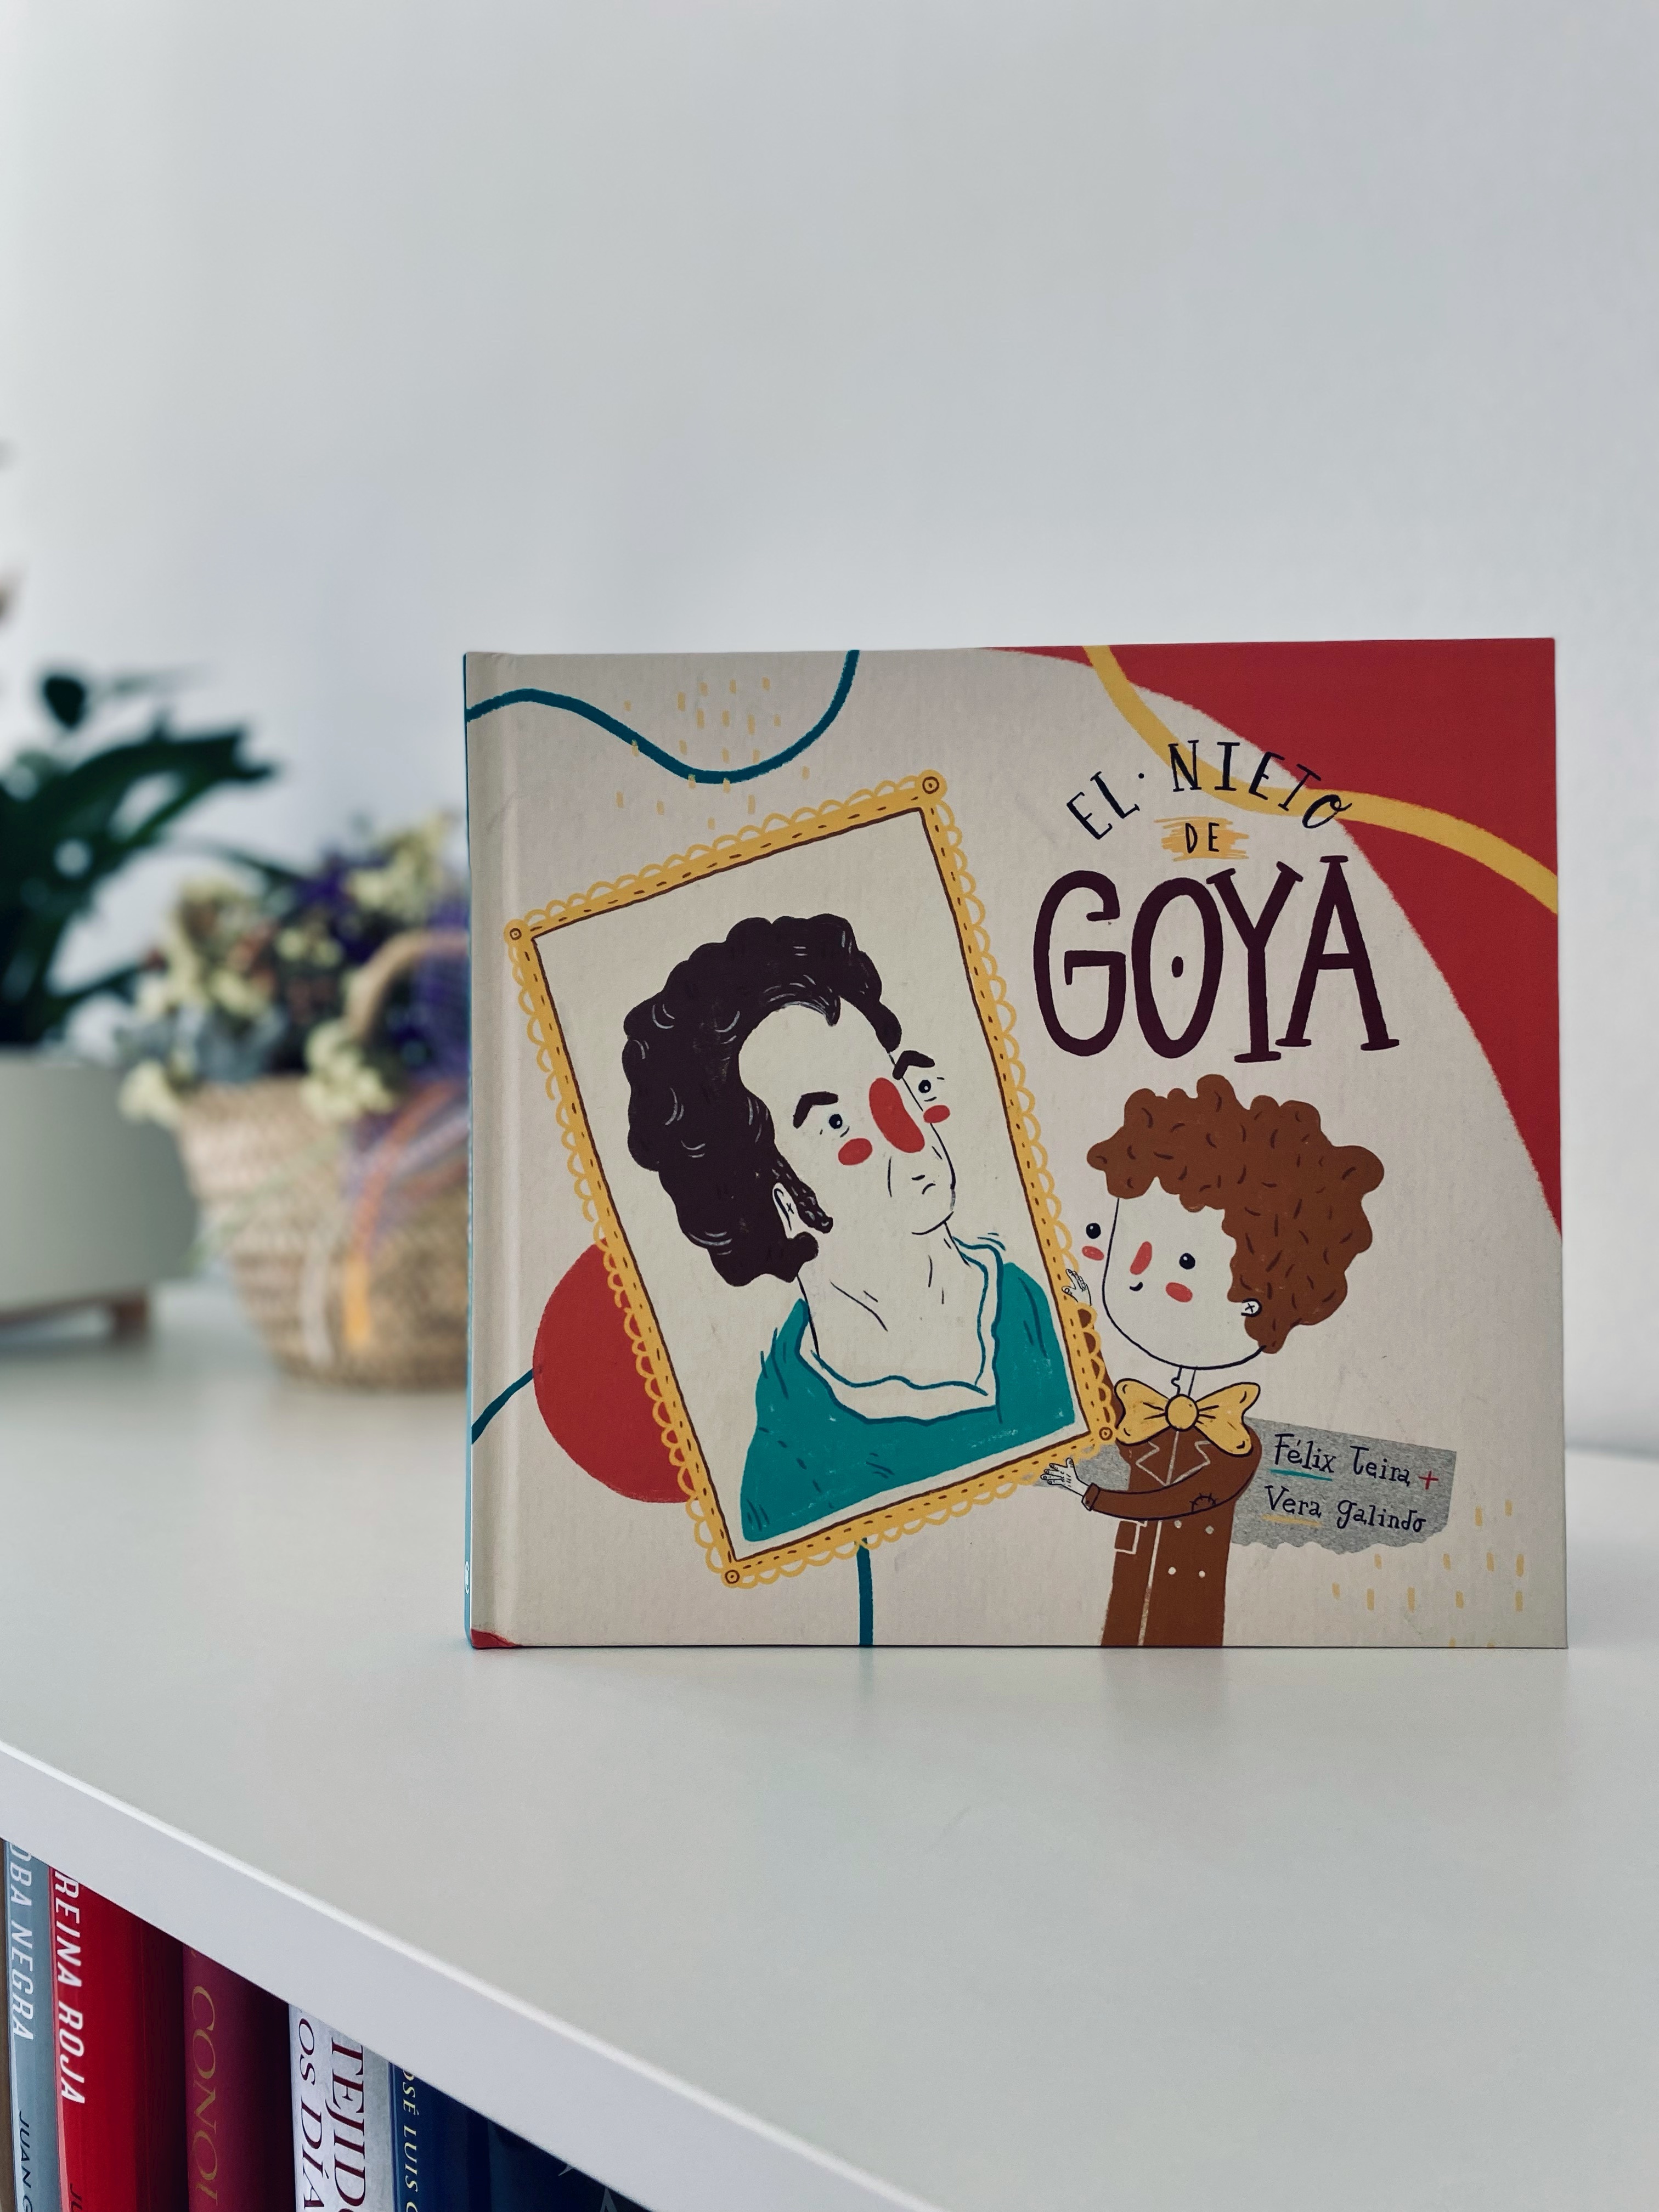 El nieto de Goya